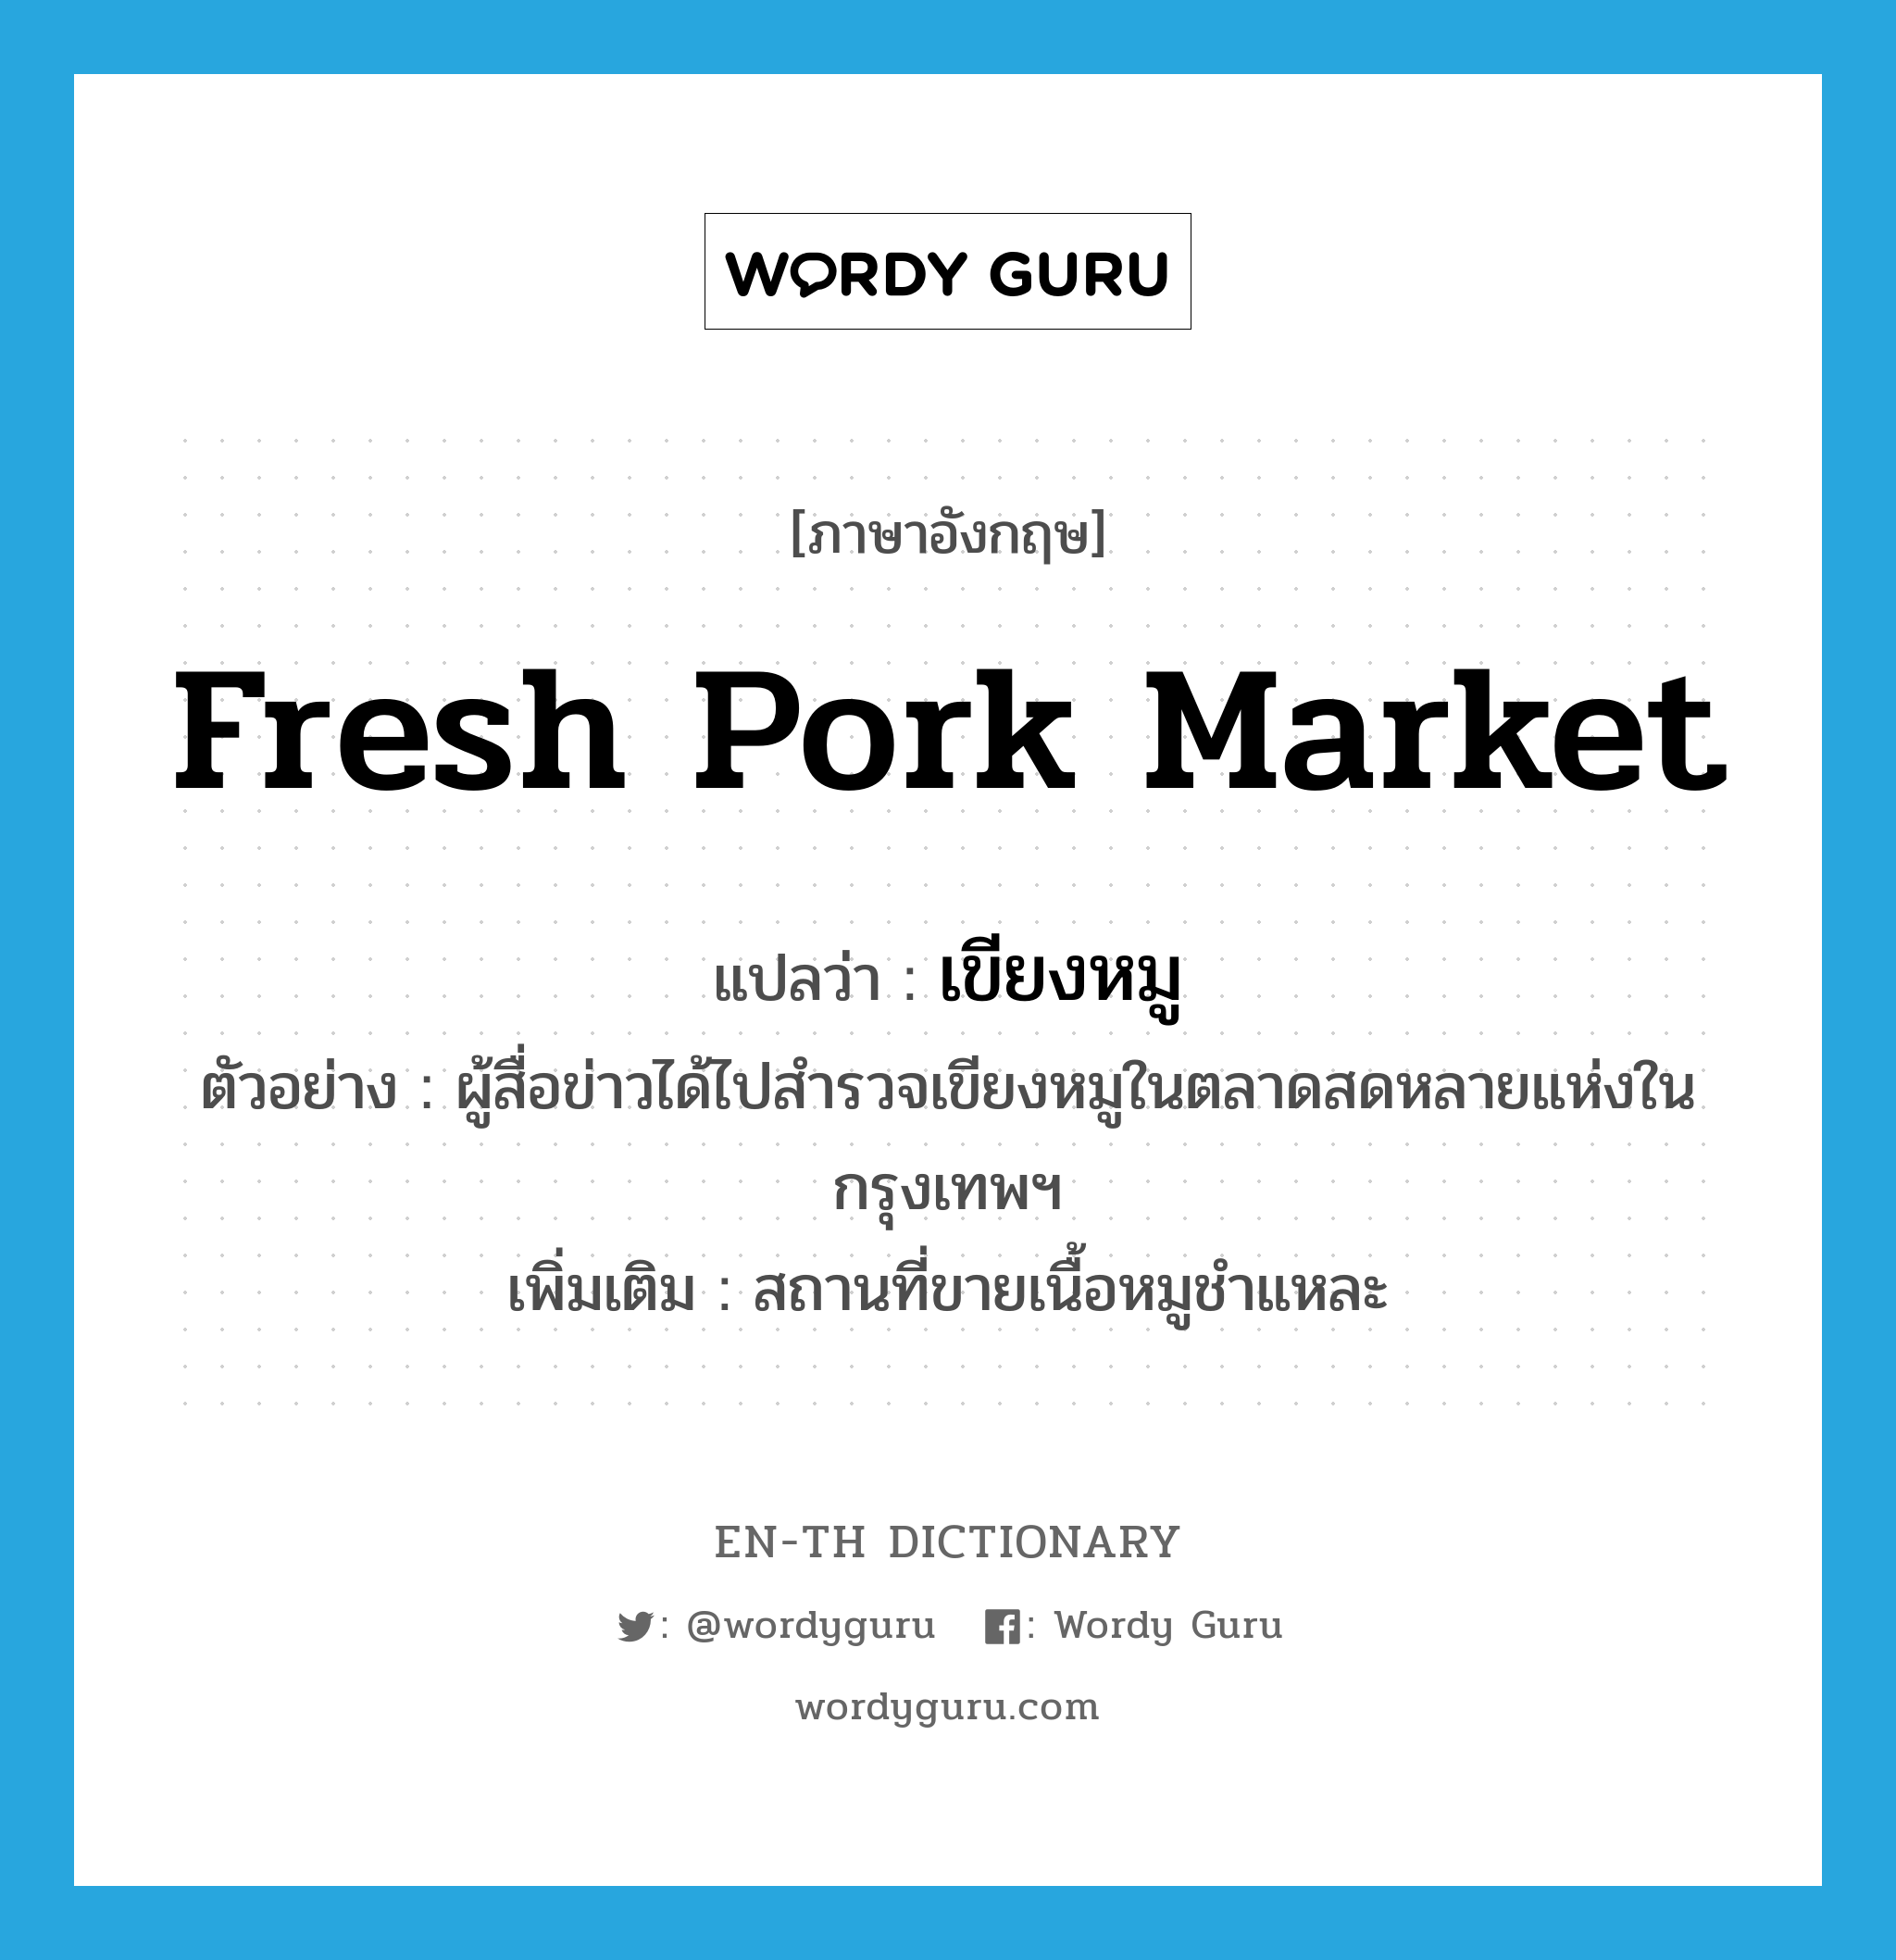 เขียงหมู ภาษาอังกฤษ?, คำศัพท์ภาษาอังกฤษ เขียงหมู แปลว่า fresh pork market ประเภท N ตัวอย่าง ผู้สื่อข่าวได้ไปสำรวจเขียงหมูในตลาดสดหลายแห่งในกรุงเทพฯ เพิ่มเติม สถานที่ขายเนื้อหมูชำแหละ หมวด N